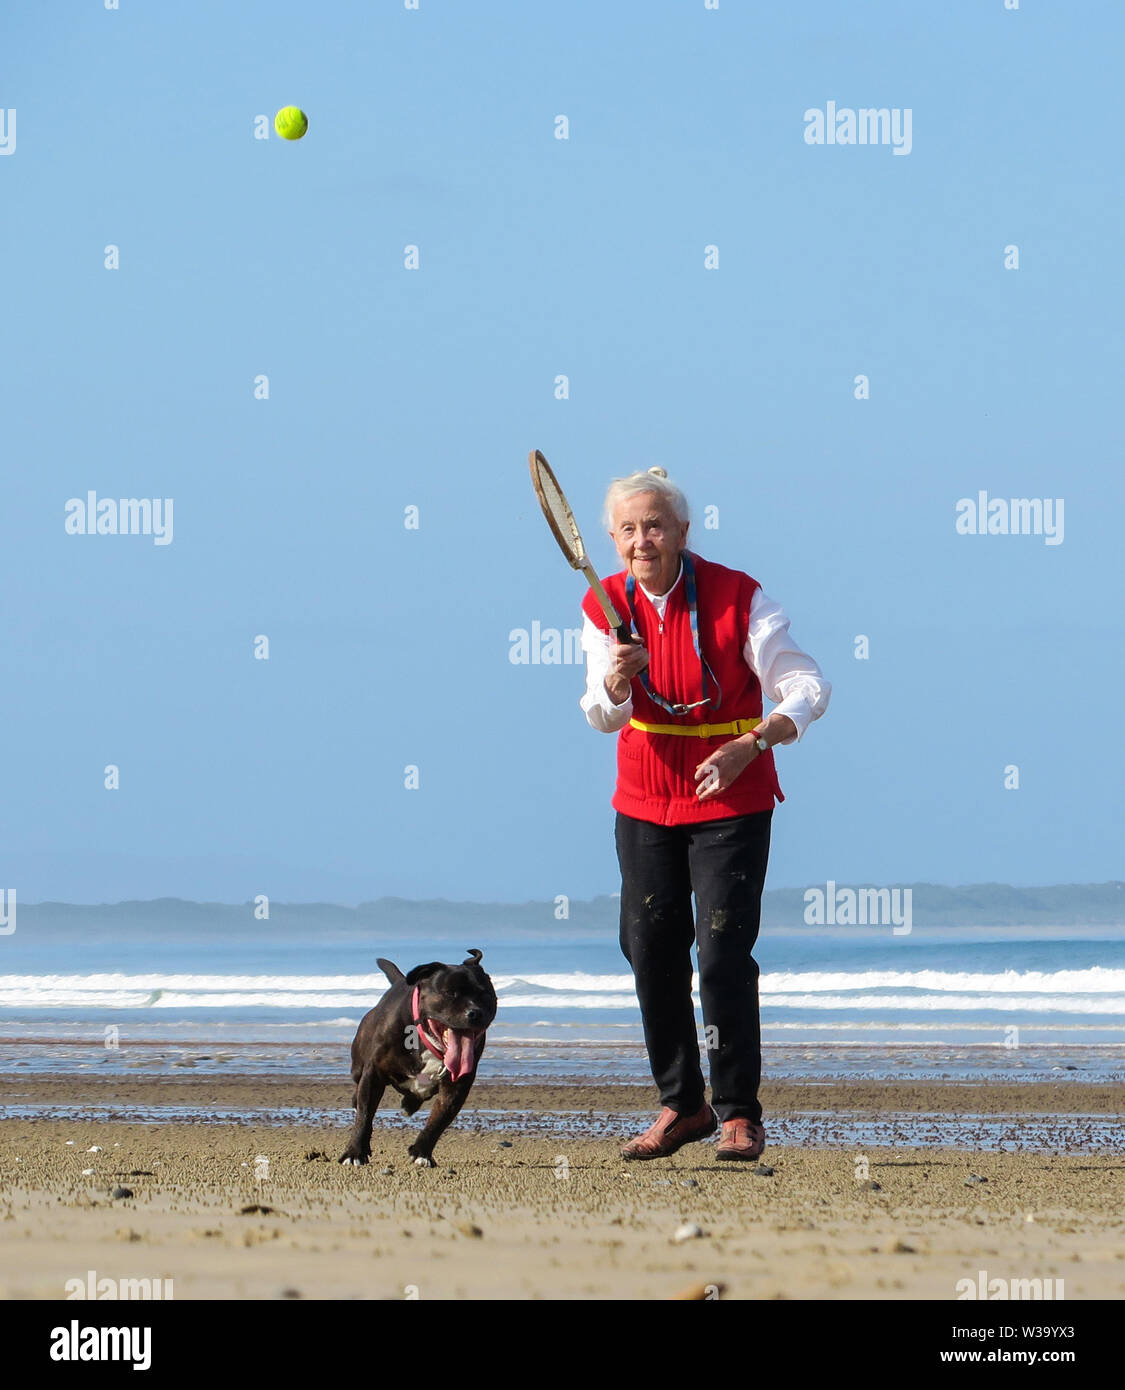 Divertimento in spiaggia come una donna più anziana colpisce una palla da tennis per il suo cane ad inseguire sulla sabbia. Foto Stock